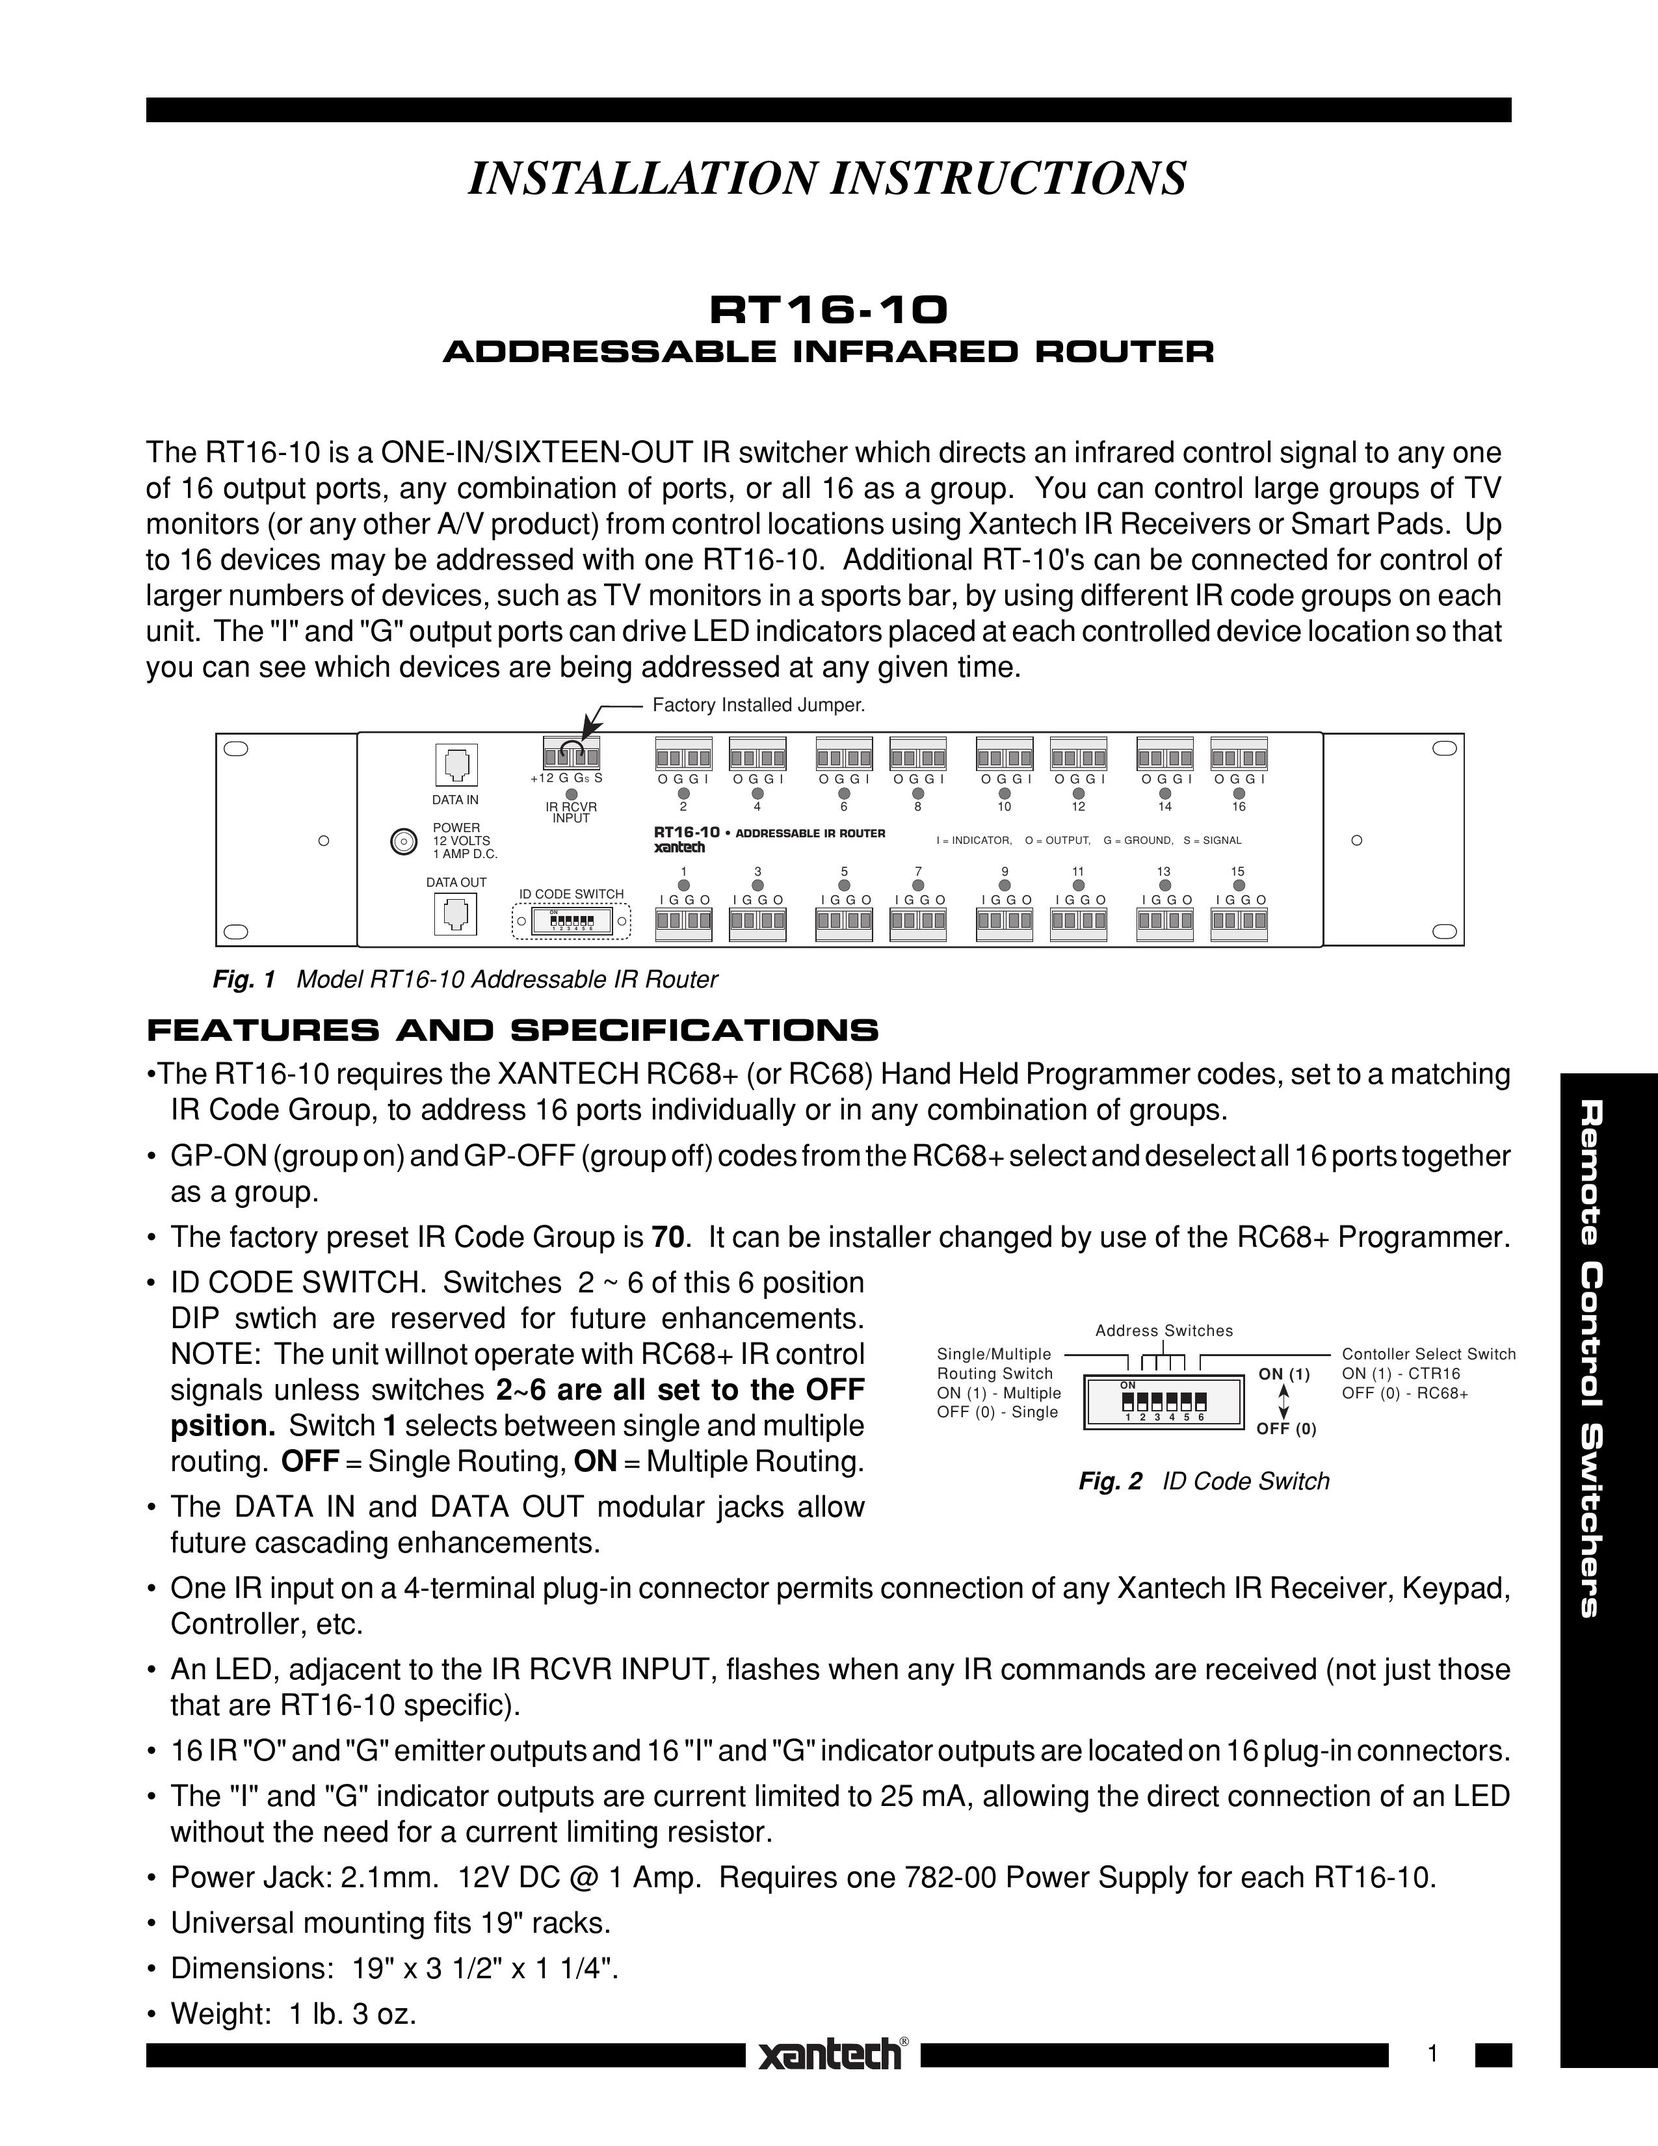 Xantech RT16-10 Network Router User Manual